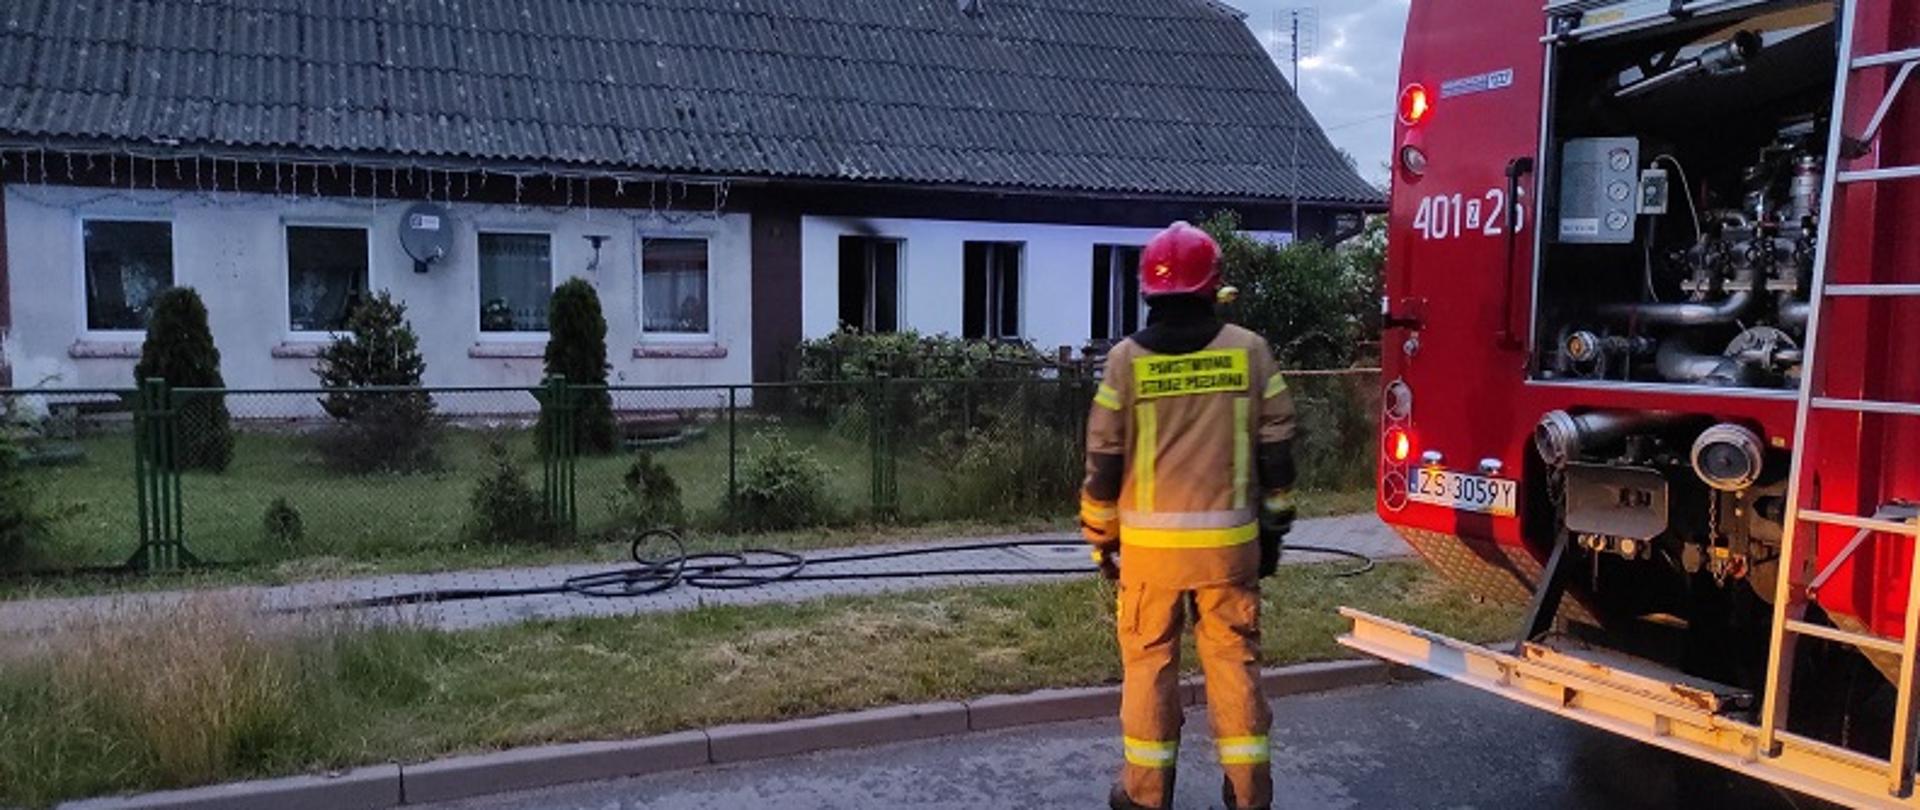 Zdjęcie przedstawia parterowy dom dwurodzinny w którym wybuch pożar. Przed płotem ogradzającym posesję stoi strażak w umundurowaniu specjalnym koloru piaskowego i czerwonym hełmem. Po prawej stronie samochód pożarniczy